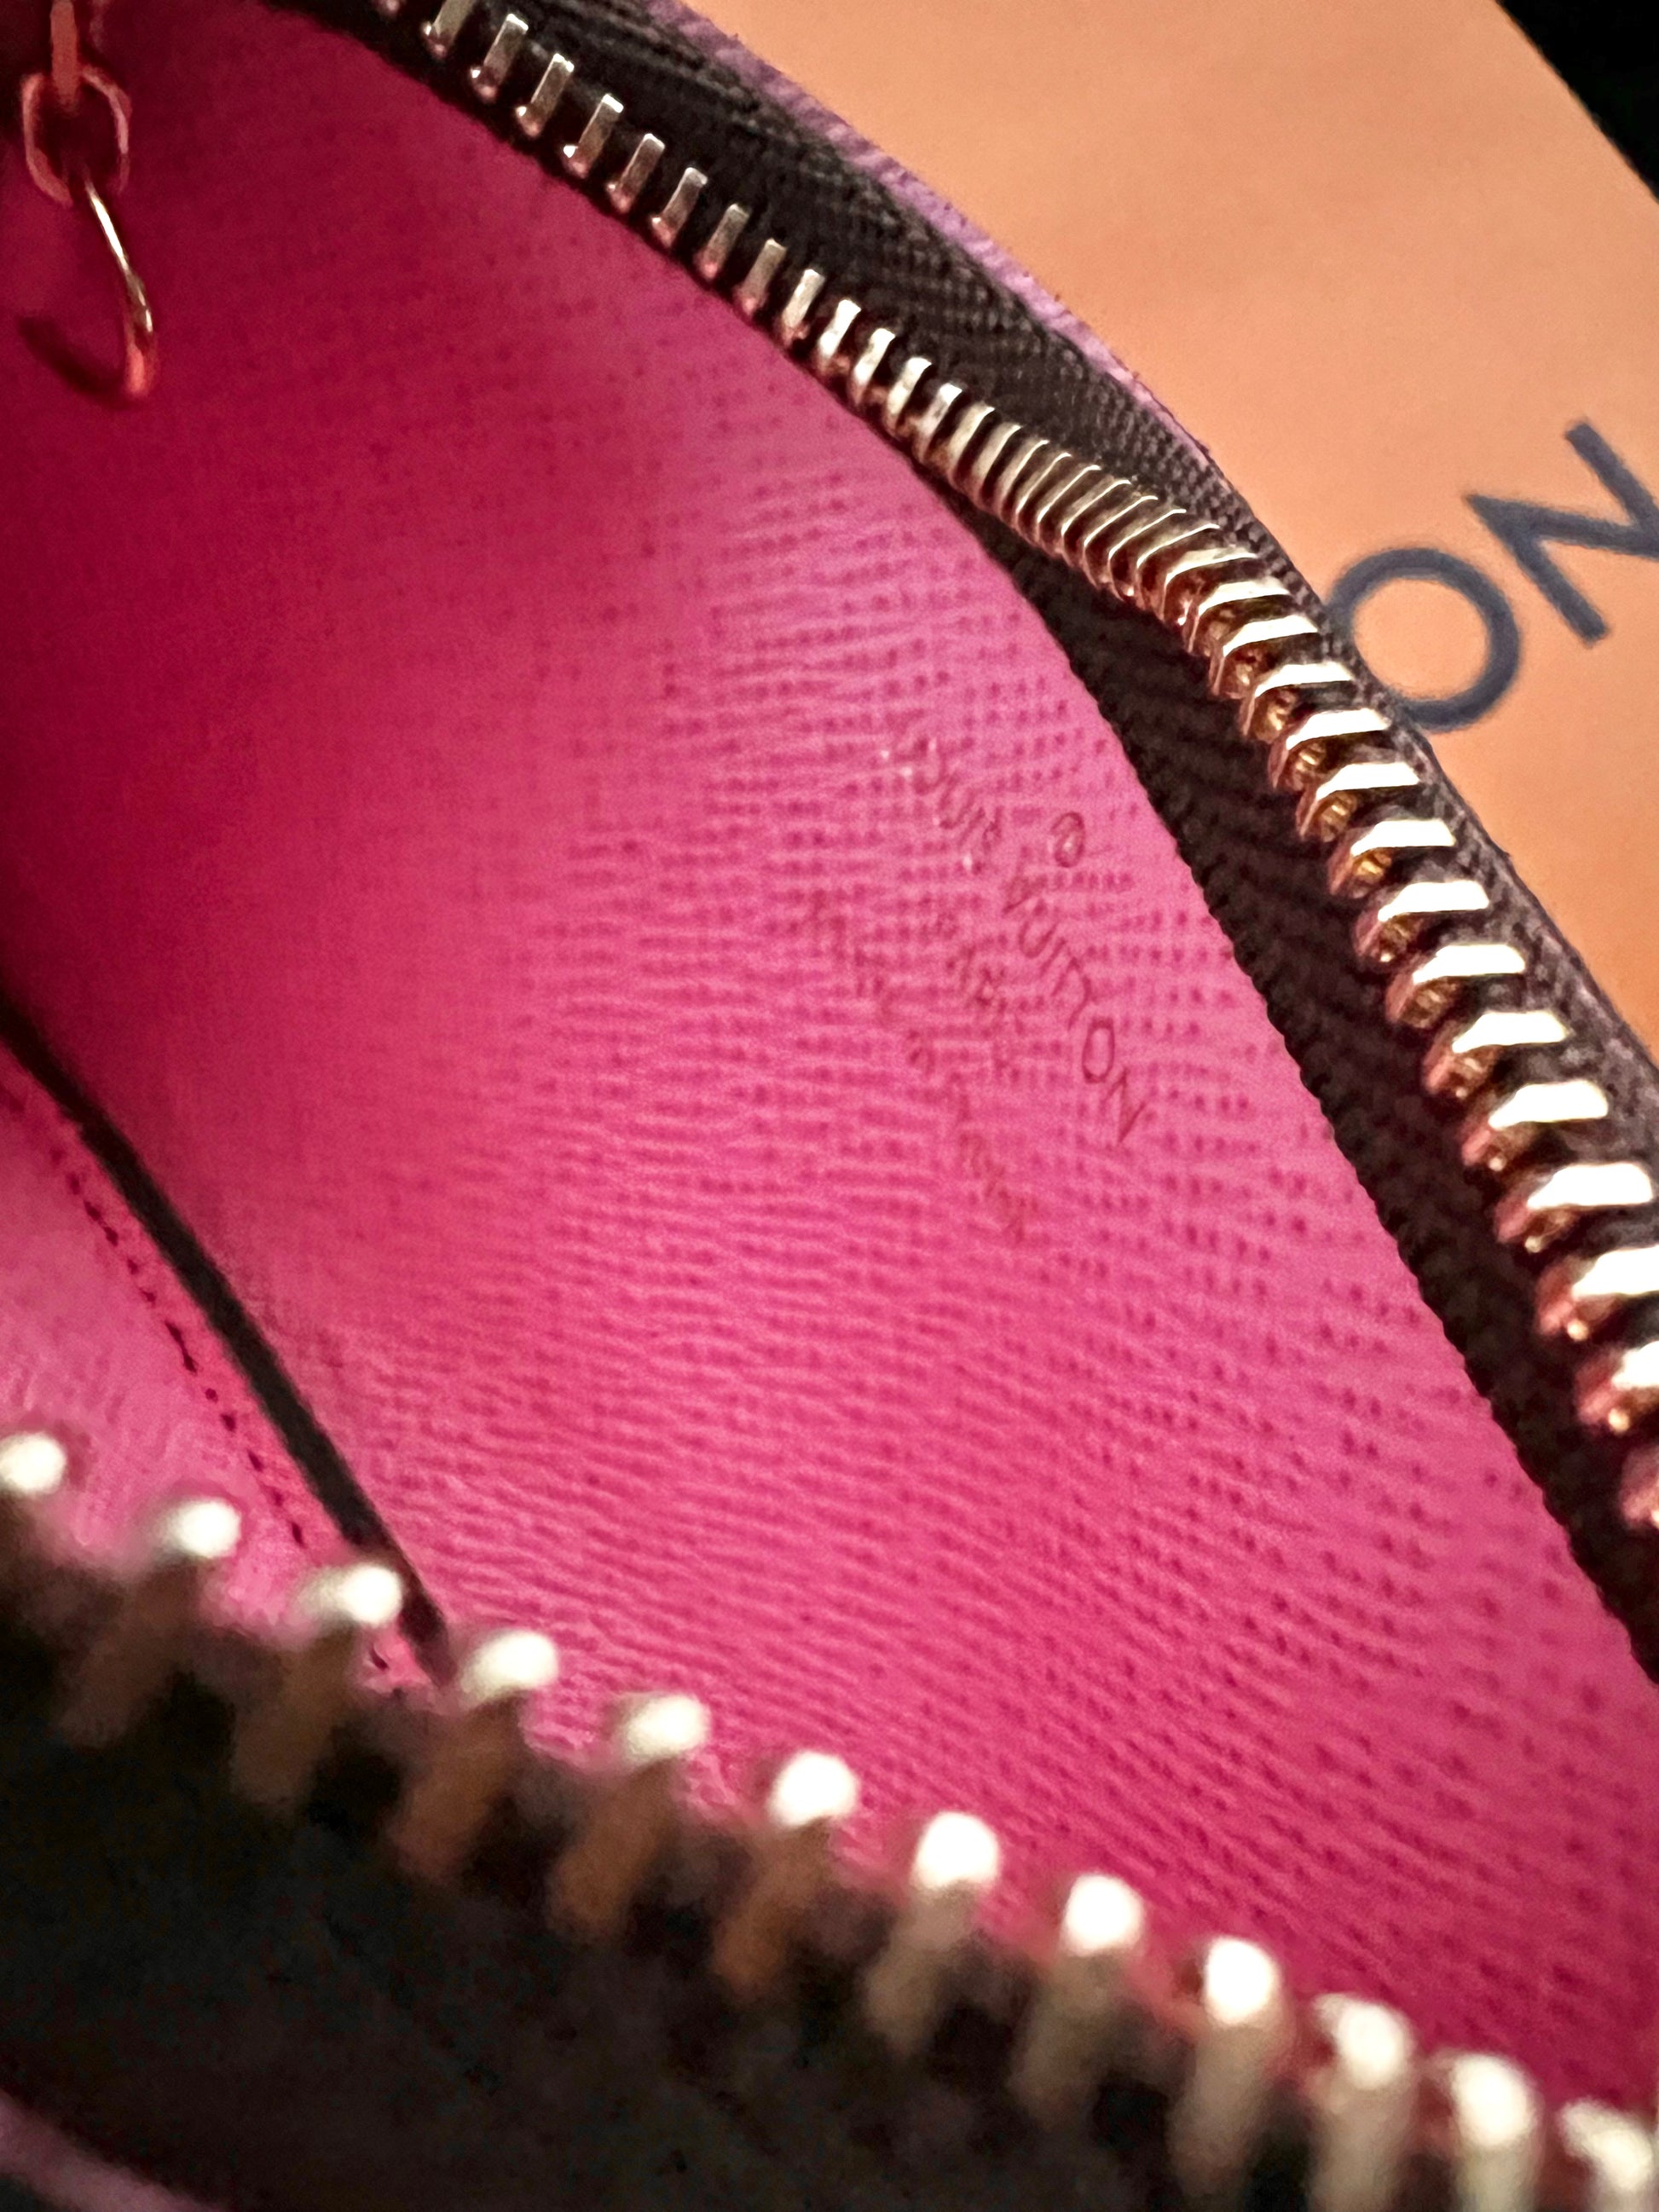 Louis Vuitton 2022 Holidays Vivienne Paris Pink Key Cles Pouch Pochette  M81639